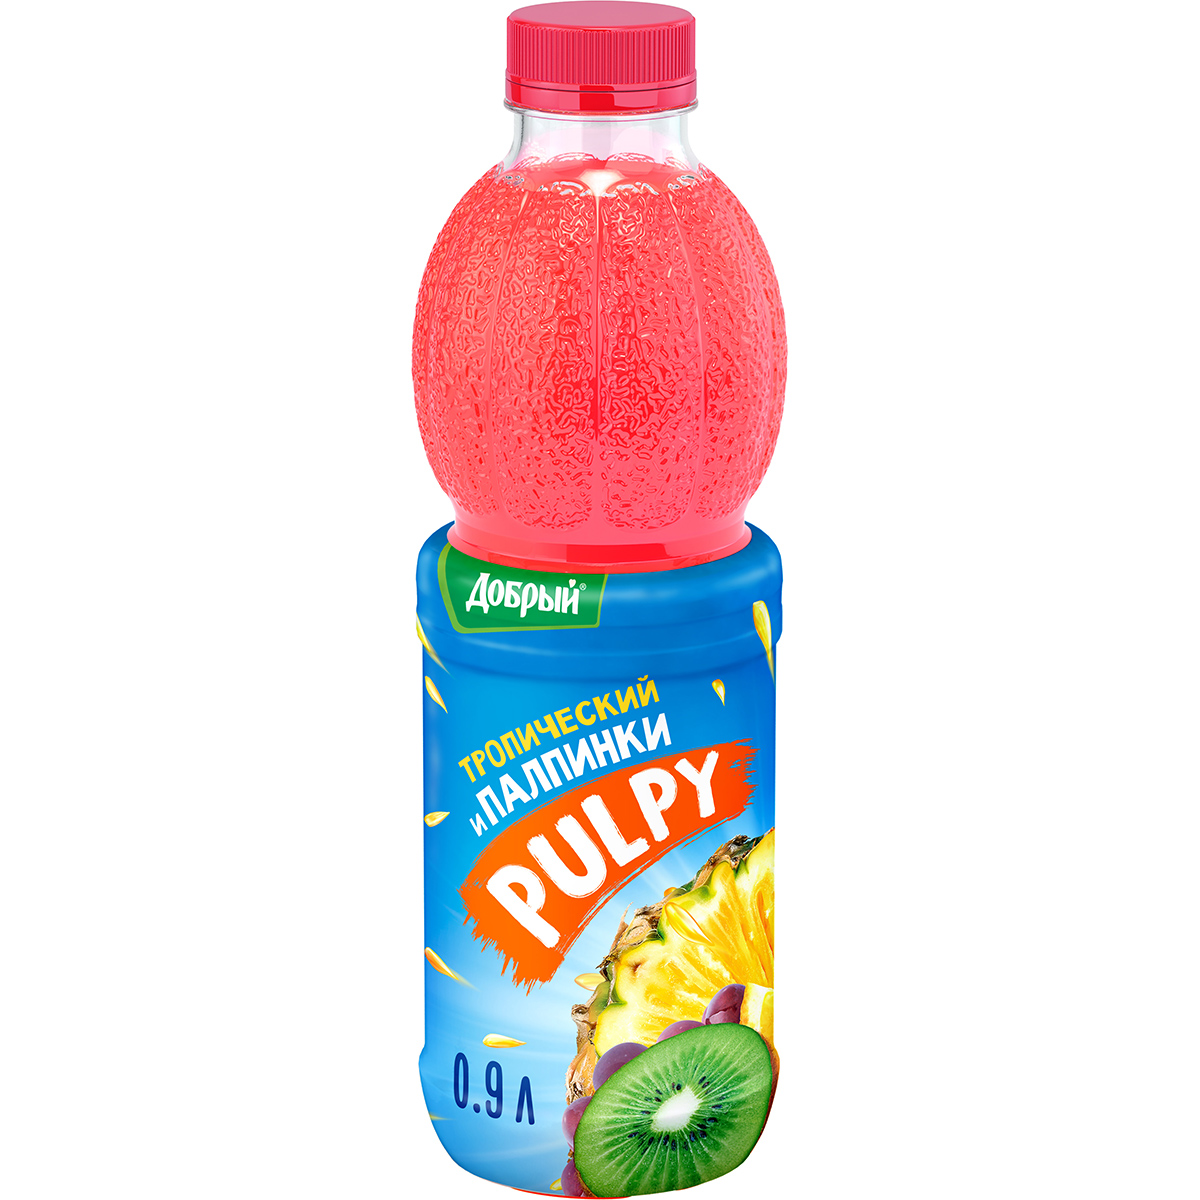 Напиток Pulpy сокосодержащий Тропический с мякотью 0,9 л напиток сокосодержащий pulpy апельсин с мякотью 0 9 л